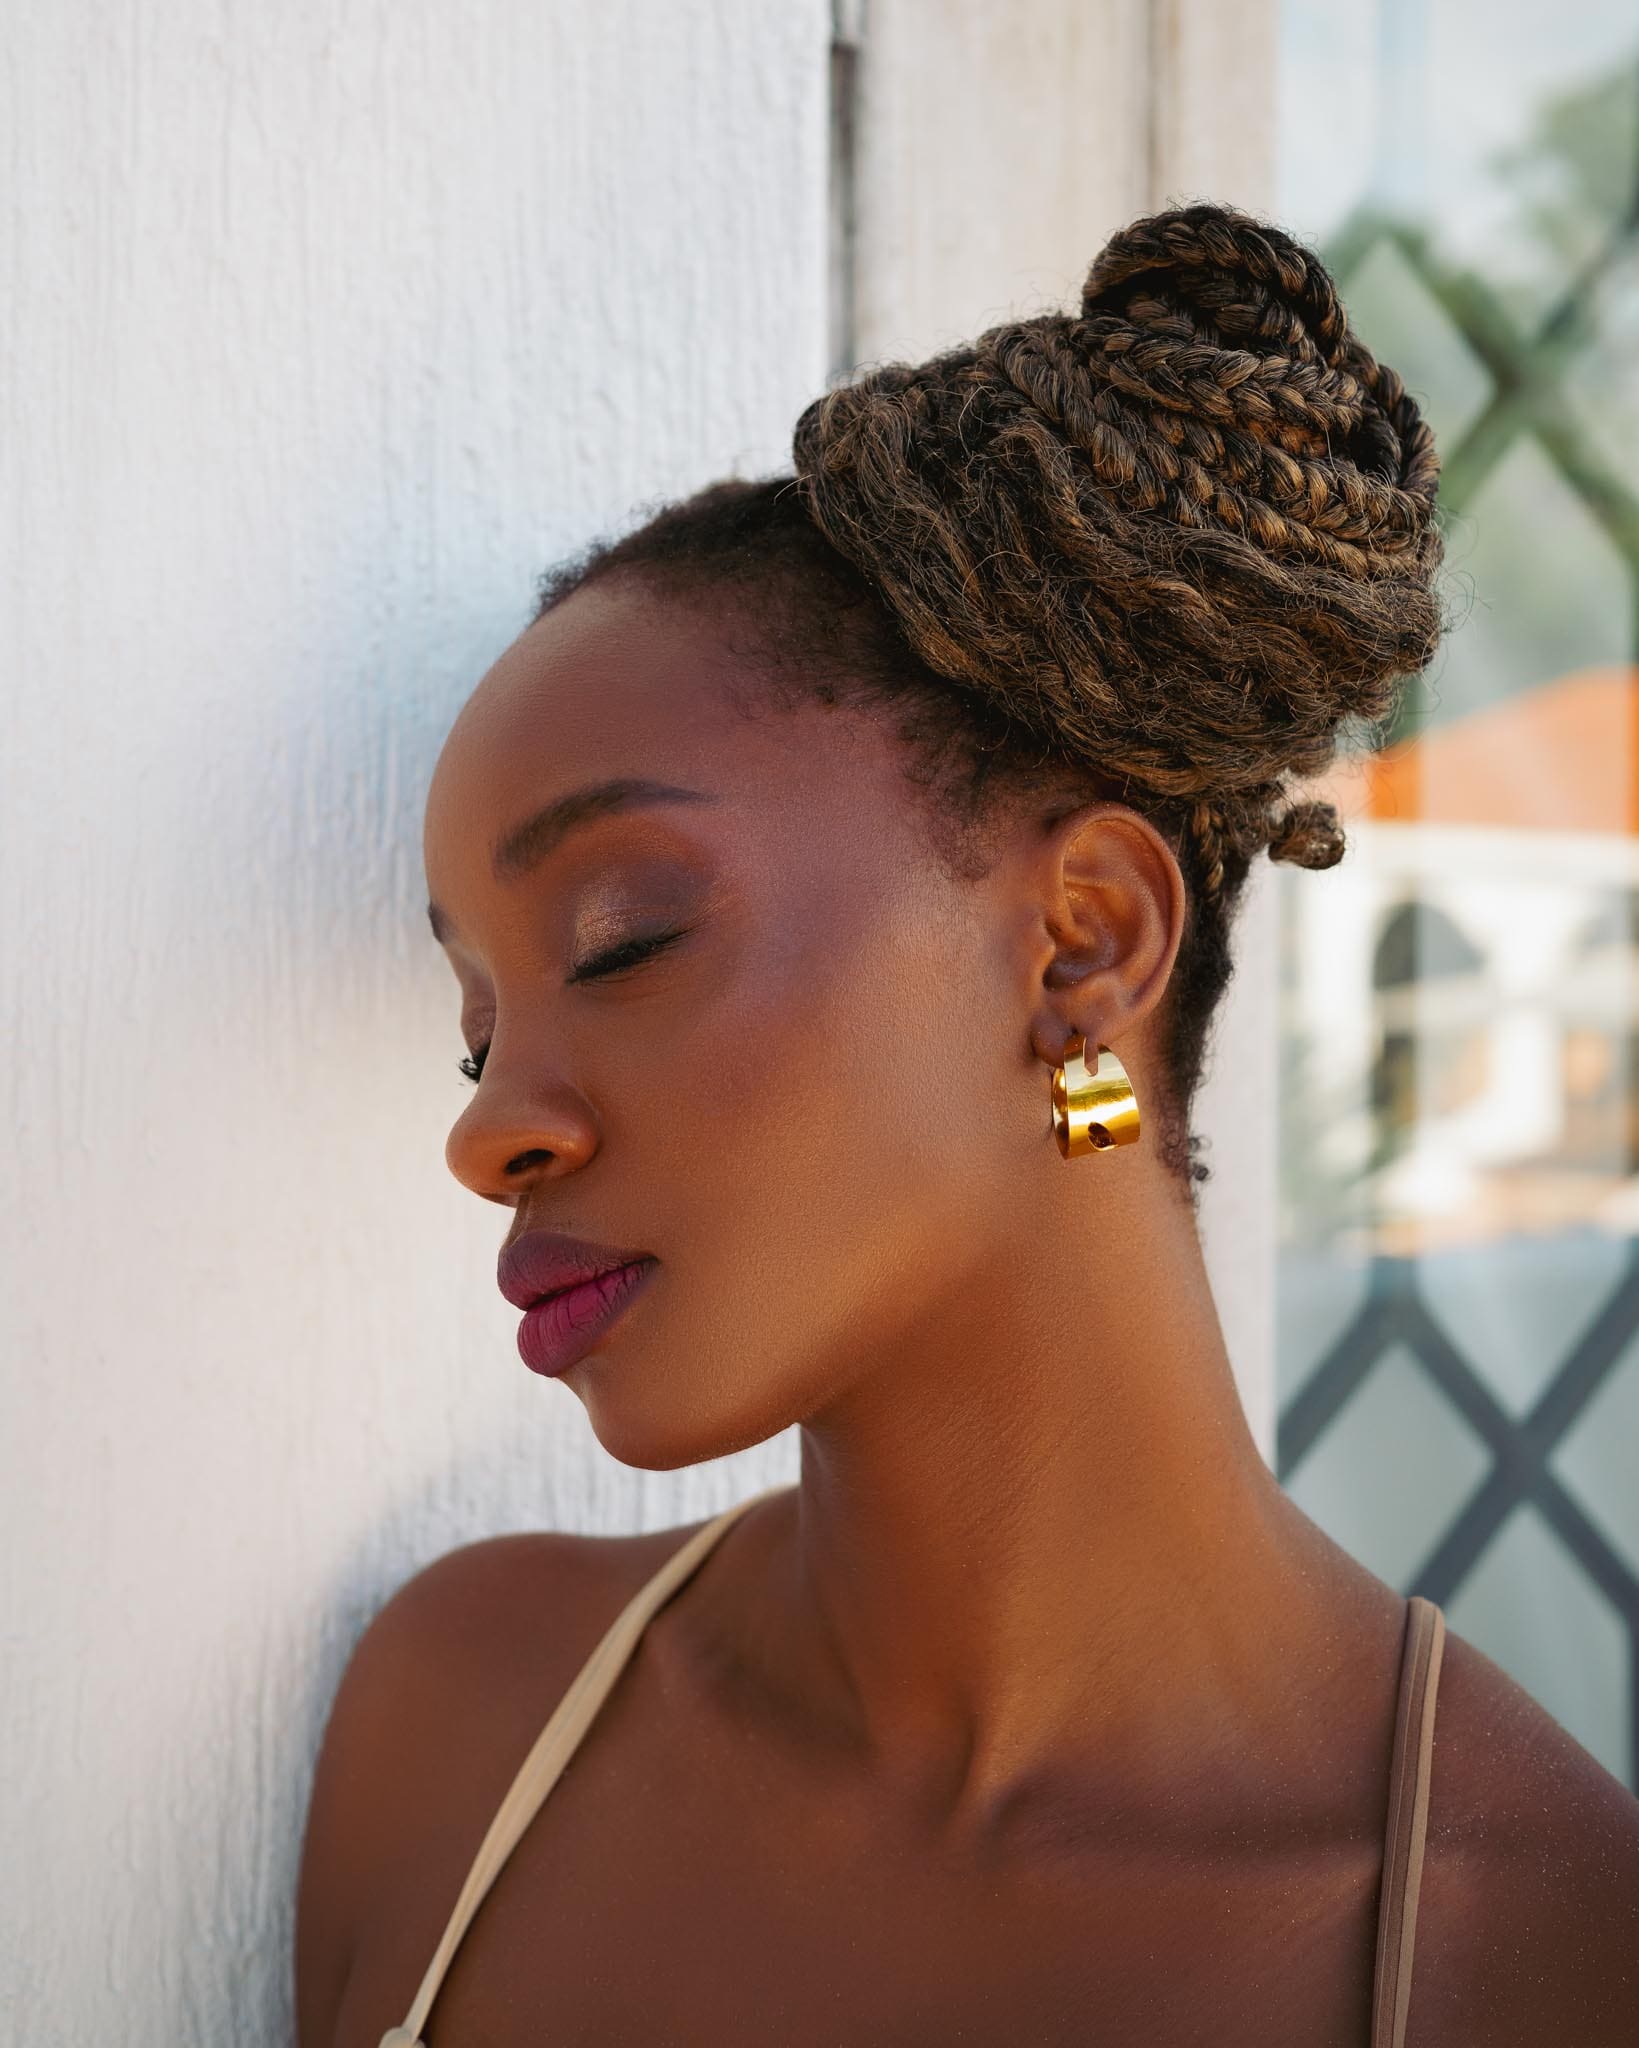 Bahari earrings small – Handmade in Kenya